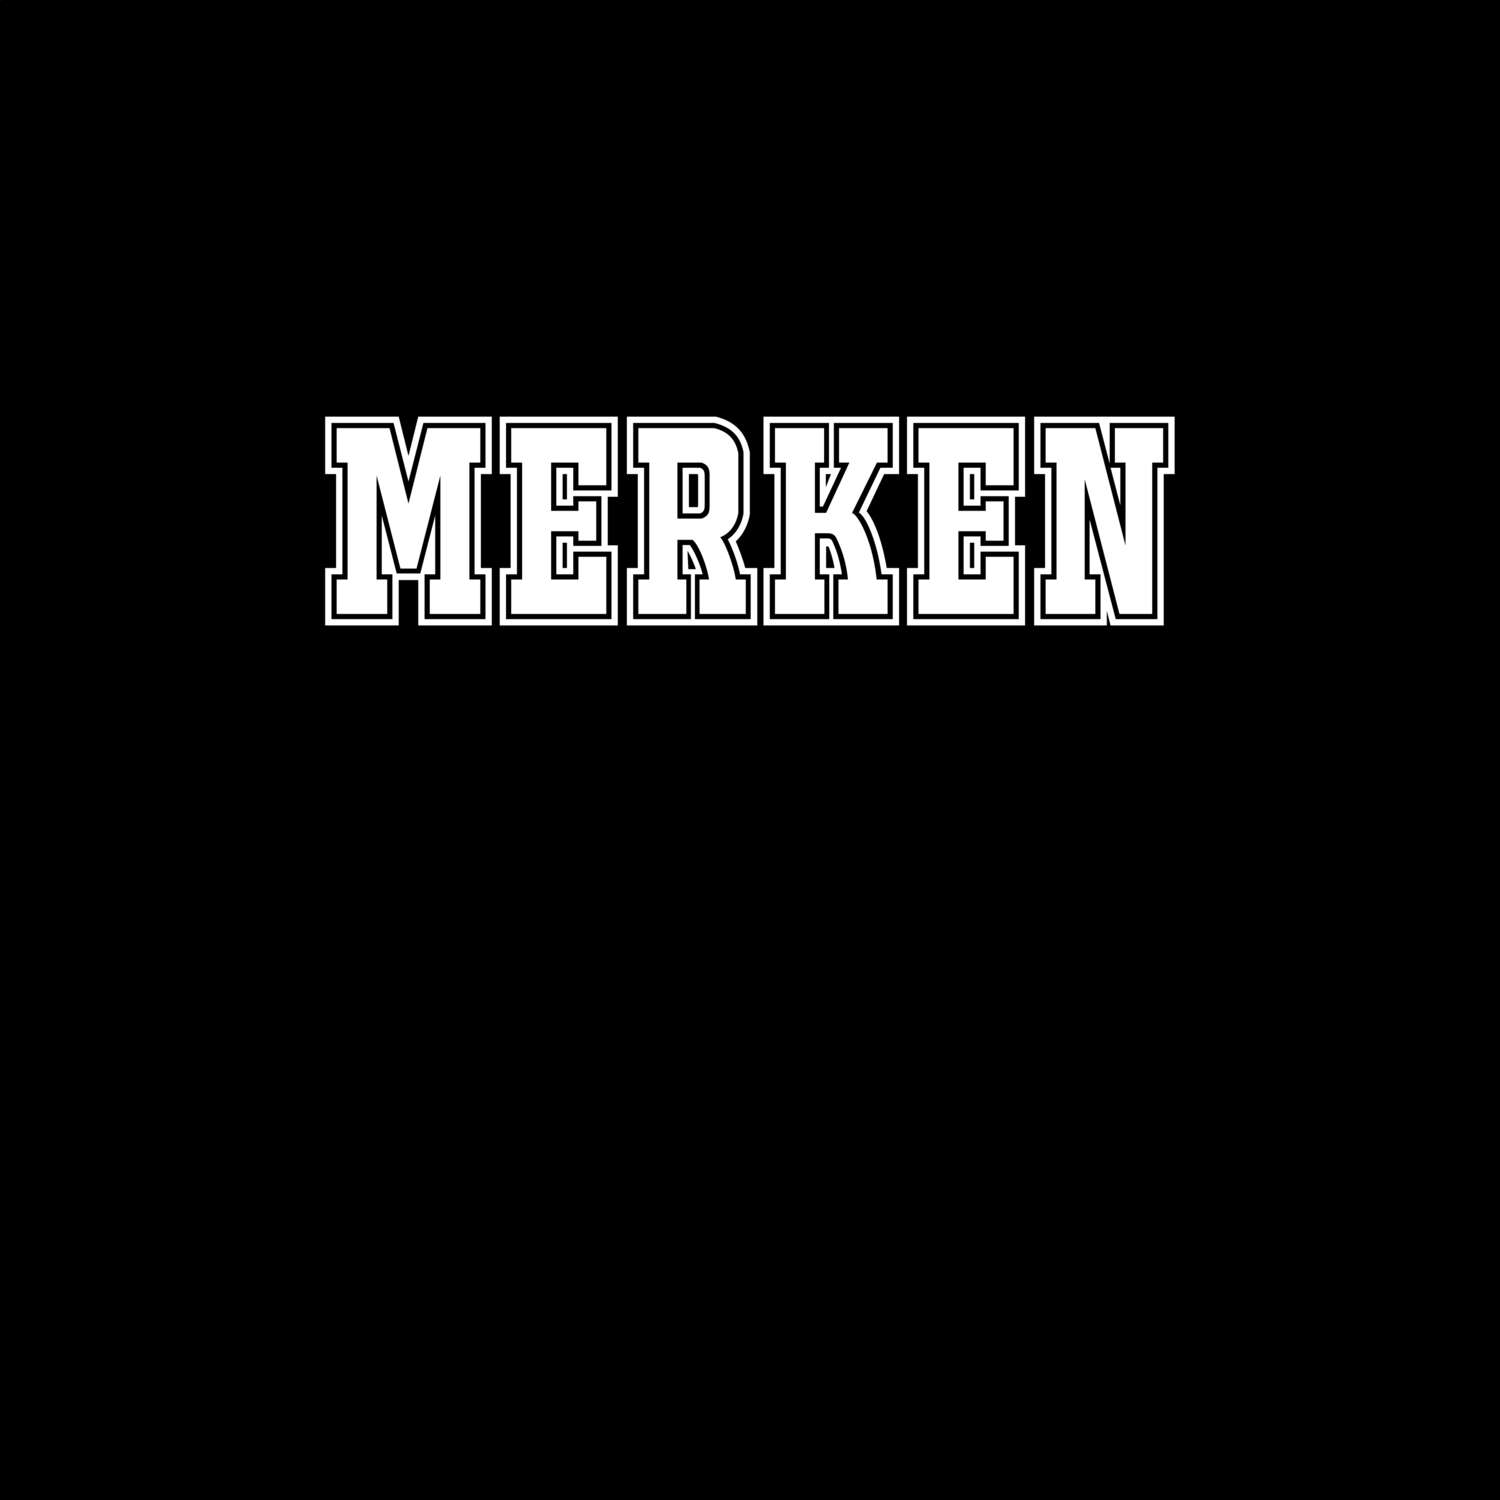 Merken T-Shirt »Classic«